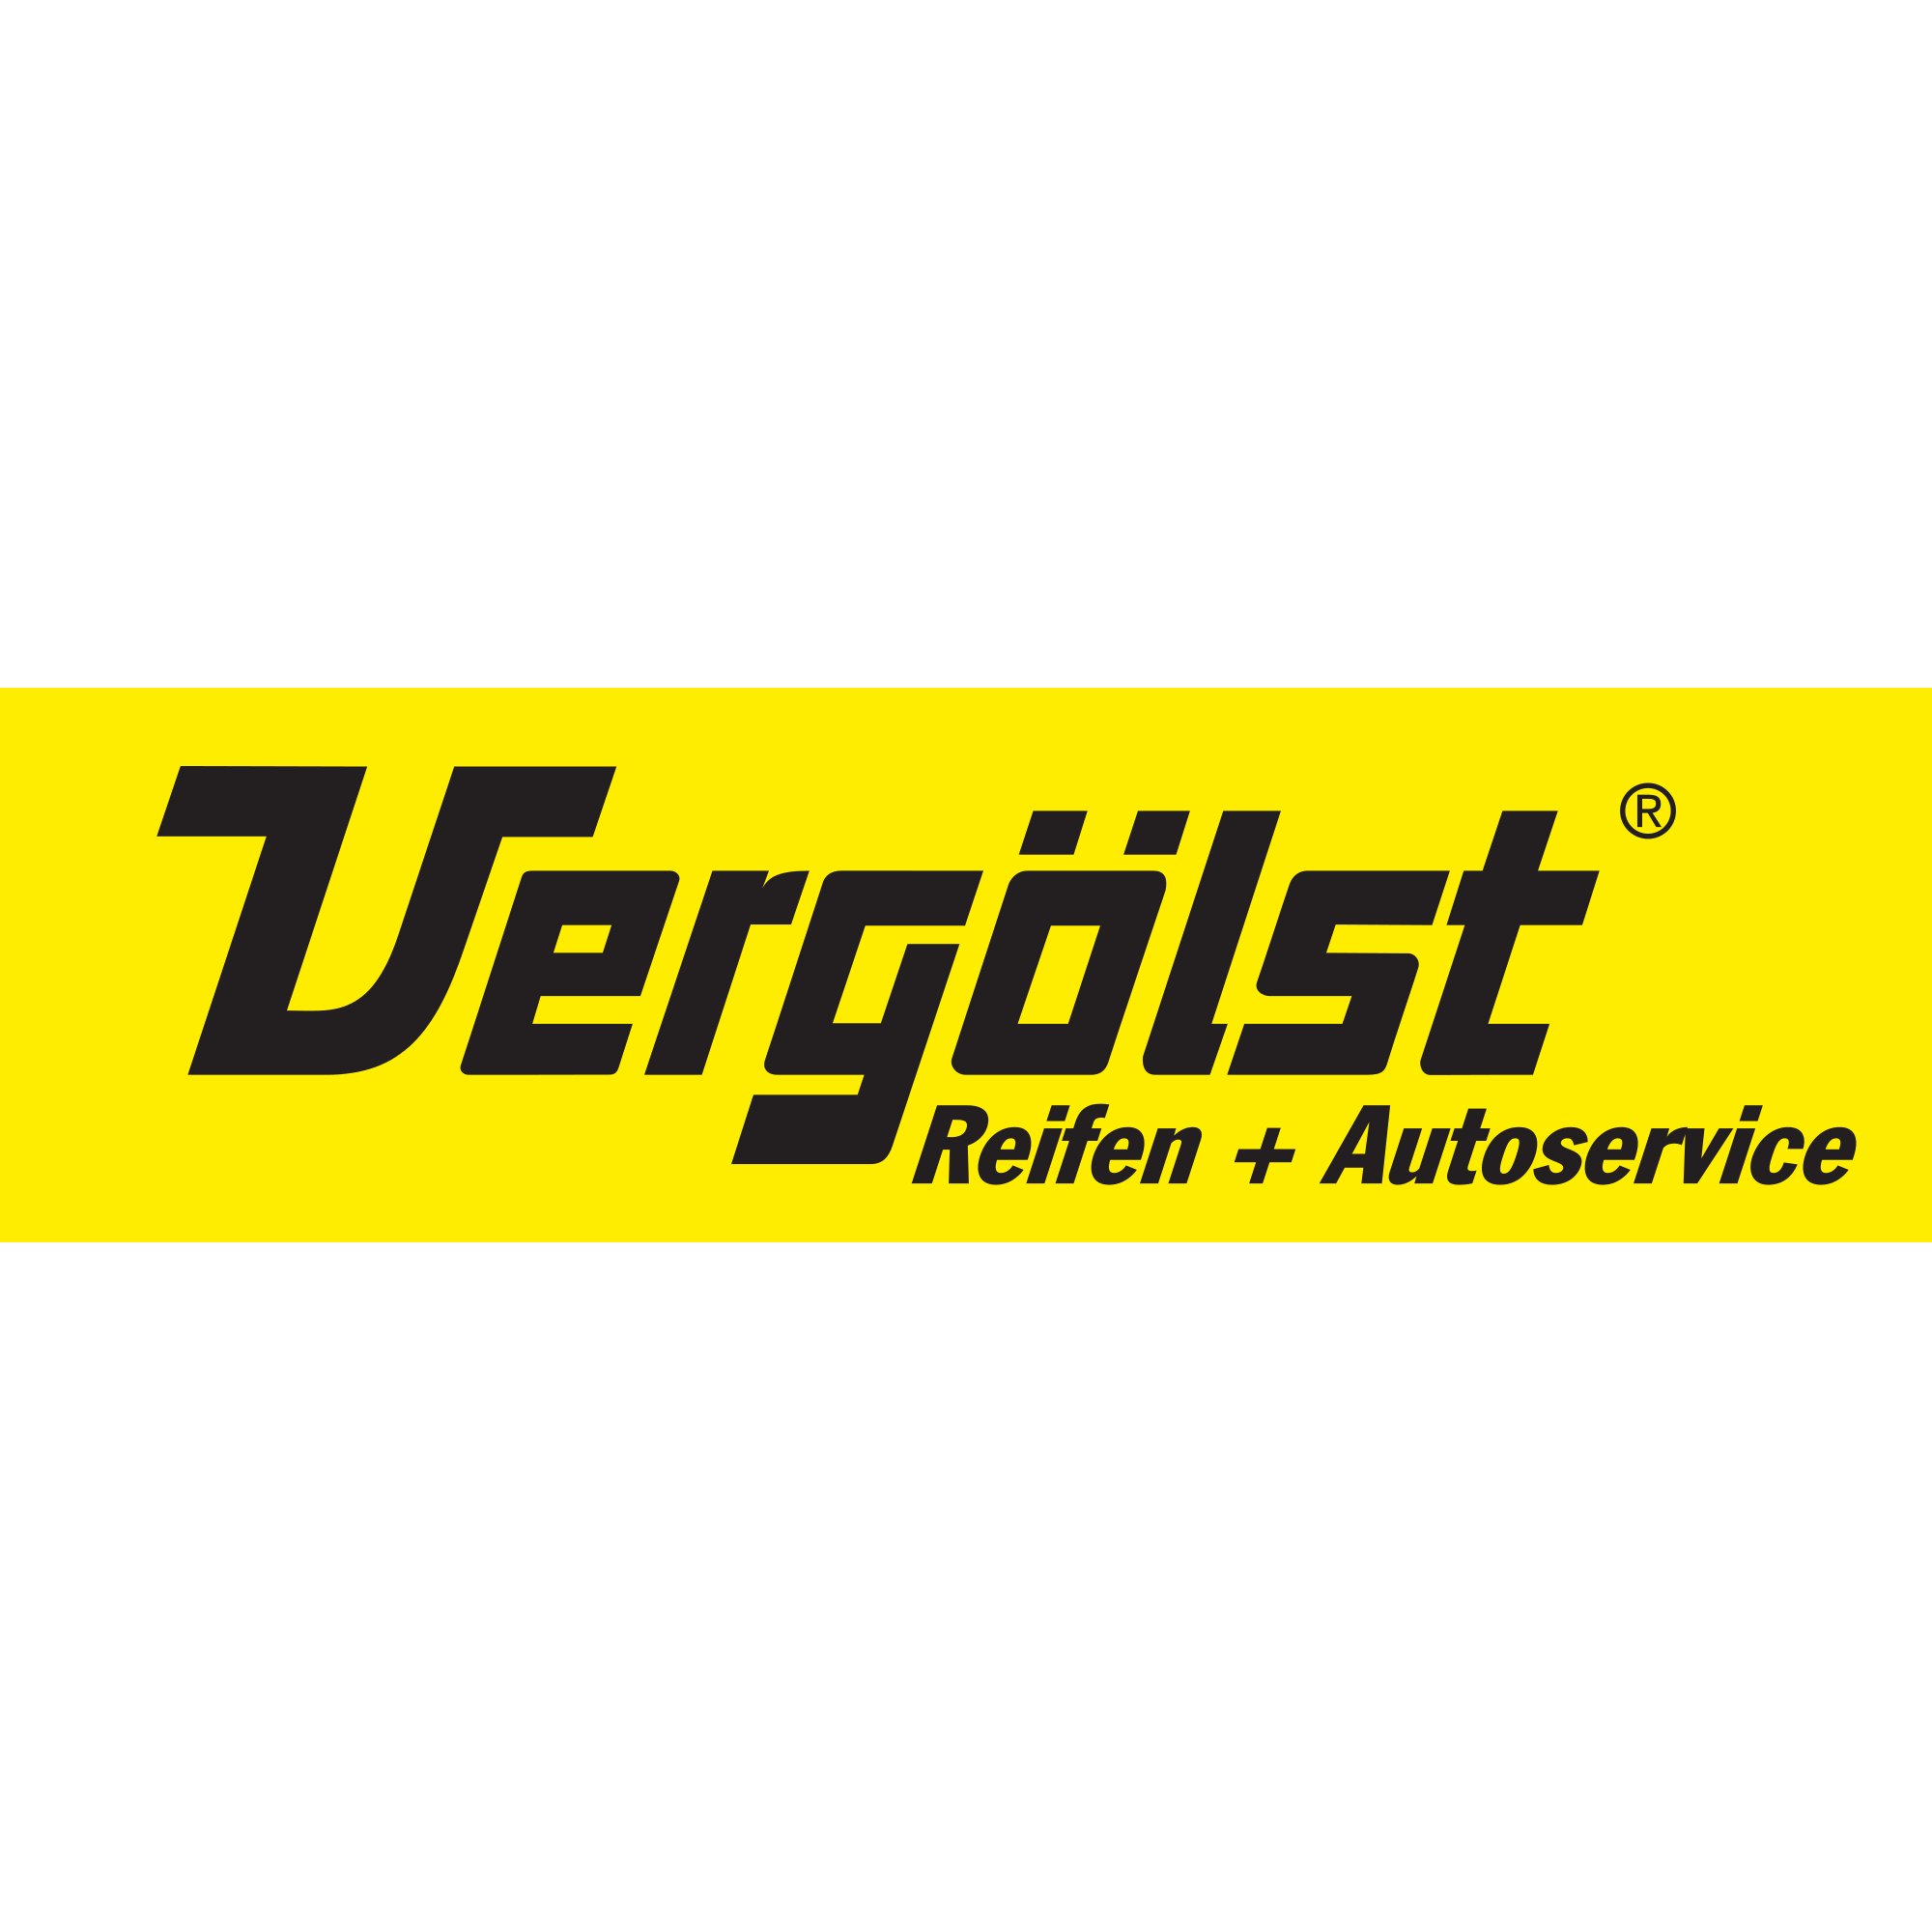 Reifen + Autoservice Vergölst Logo